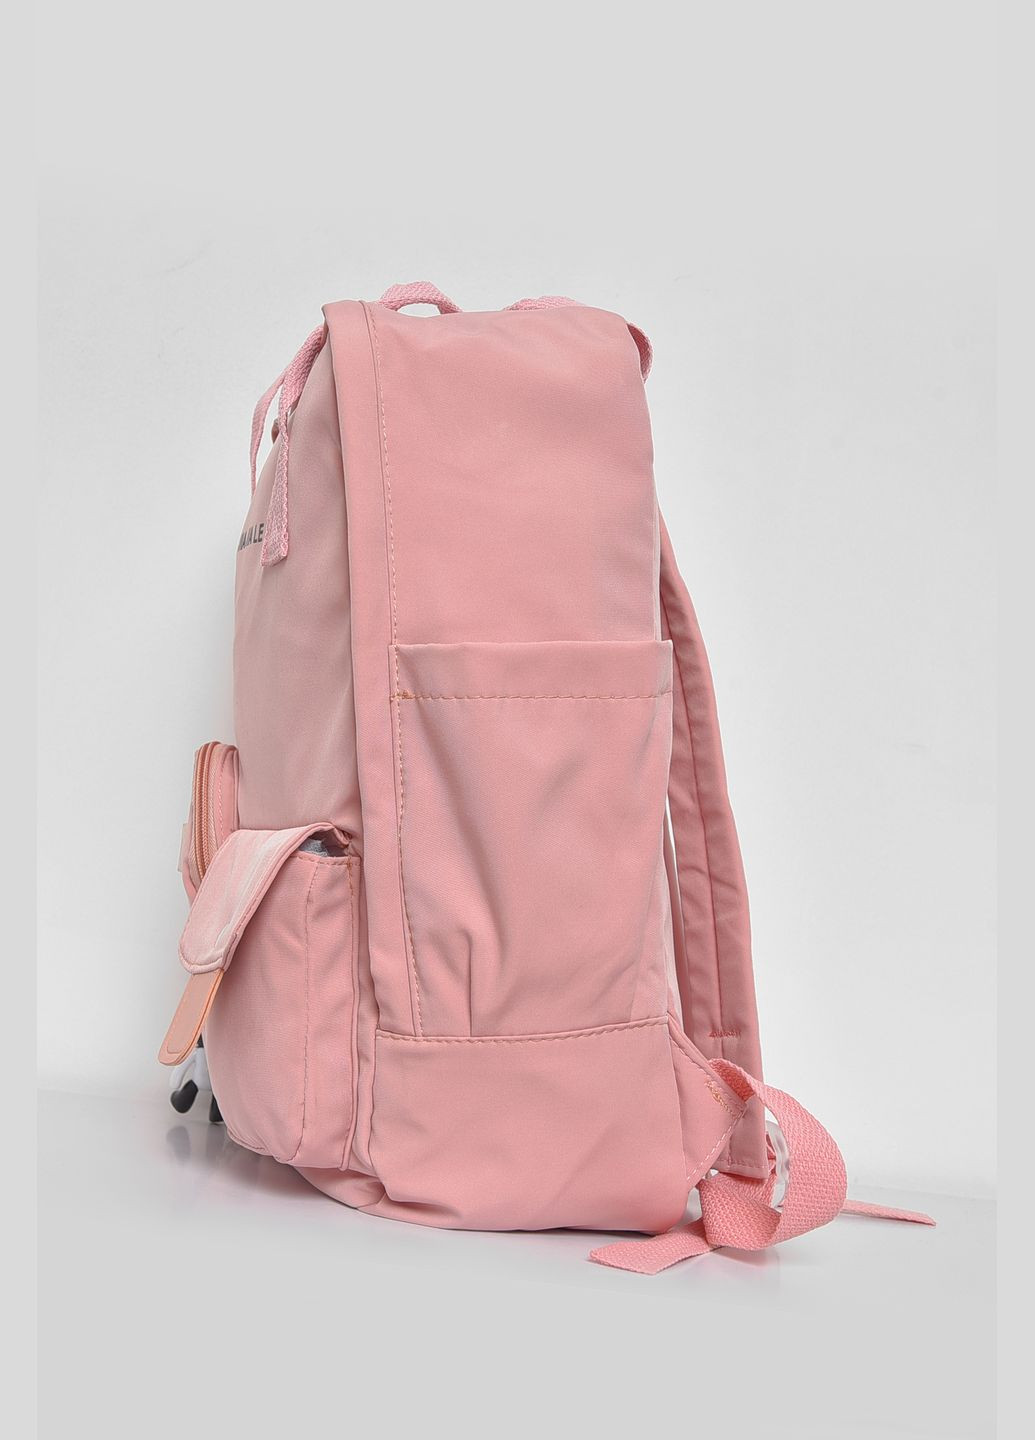 Рюкзак женский текстильный светло-розового цвета Let's Shop (281352731)